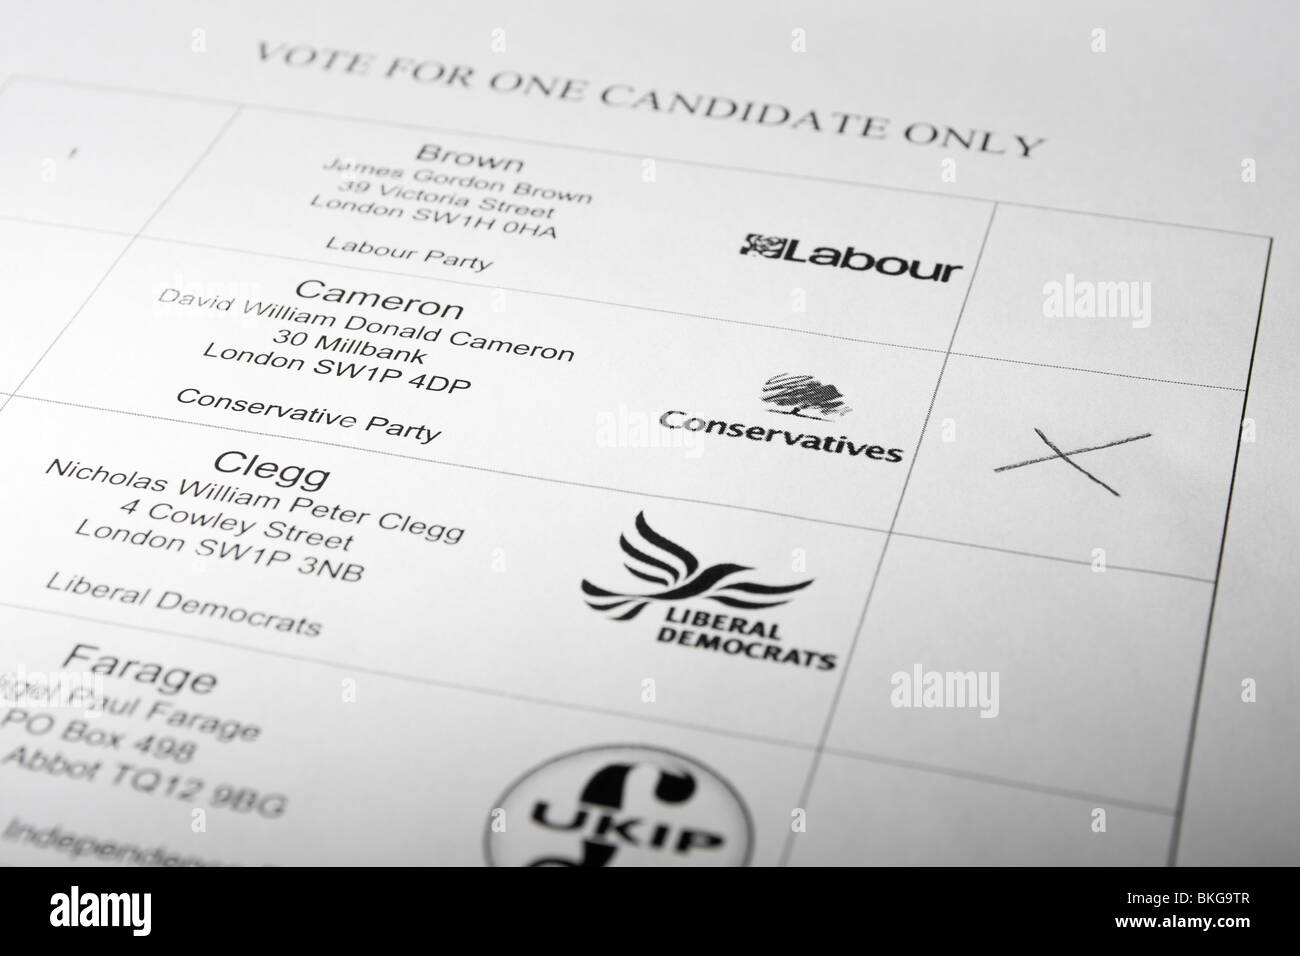 Des maquettes de bulletin de vote au Royaume-Uni Élection générale montrant voter pour conservateurs / David Cameron Banque D'Images